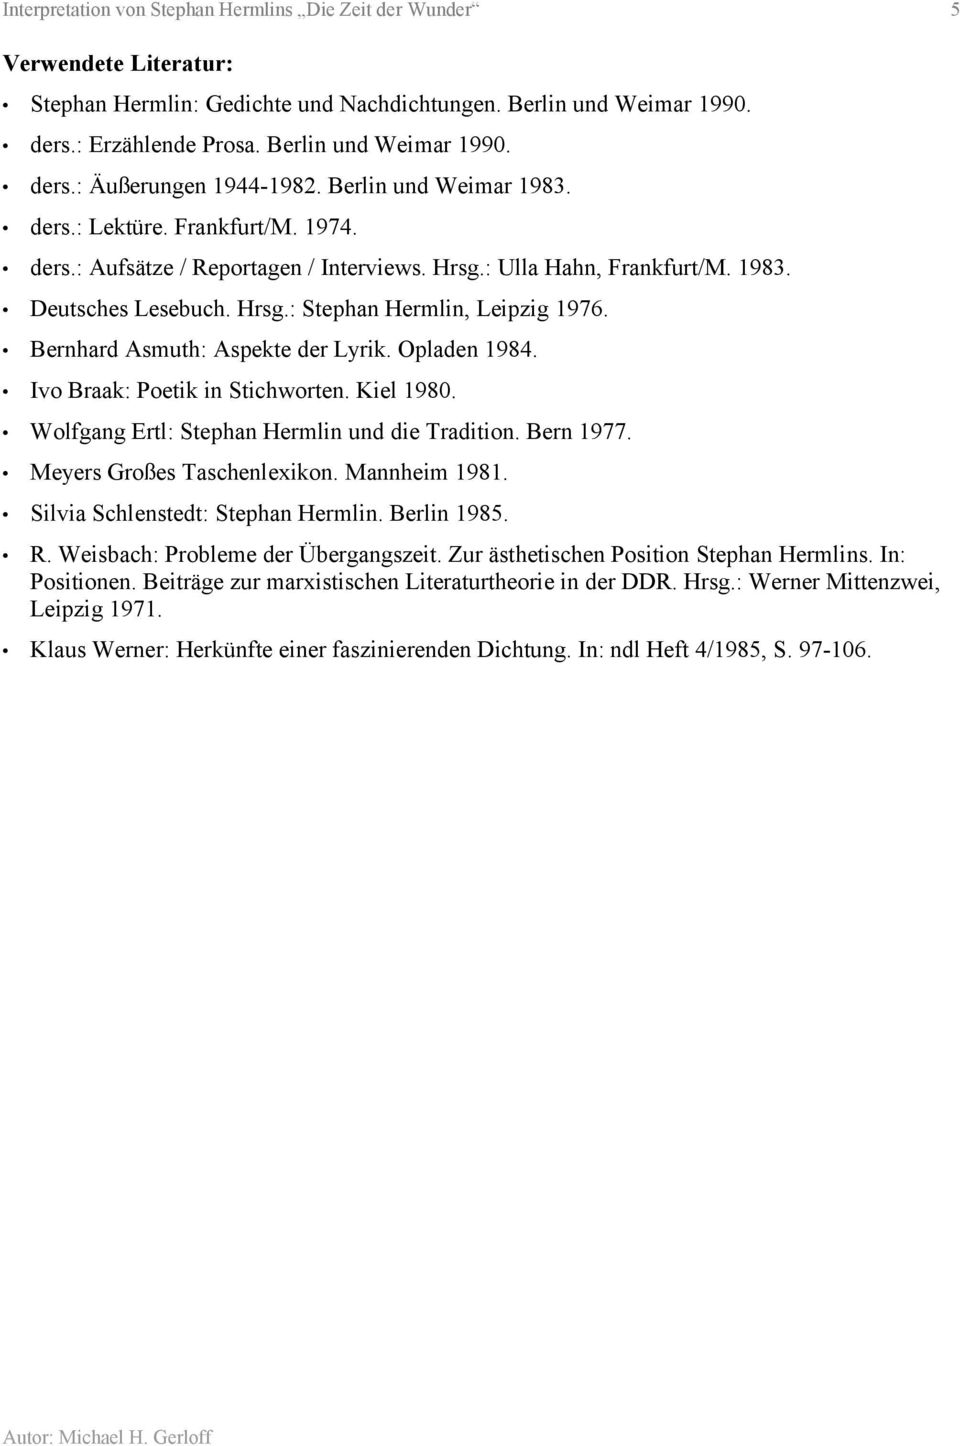 Bernhard Asmuth: Aspekte der Lyrik. Opladen 1984. Ivo Braak: Poetik in Stichworten. Kiel 1980. Wolfgang Ertl: Stephan Hermlin und die Tradition. Bern 1977. Meyers Großes Taschenlexikon. Mannheim 1981.